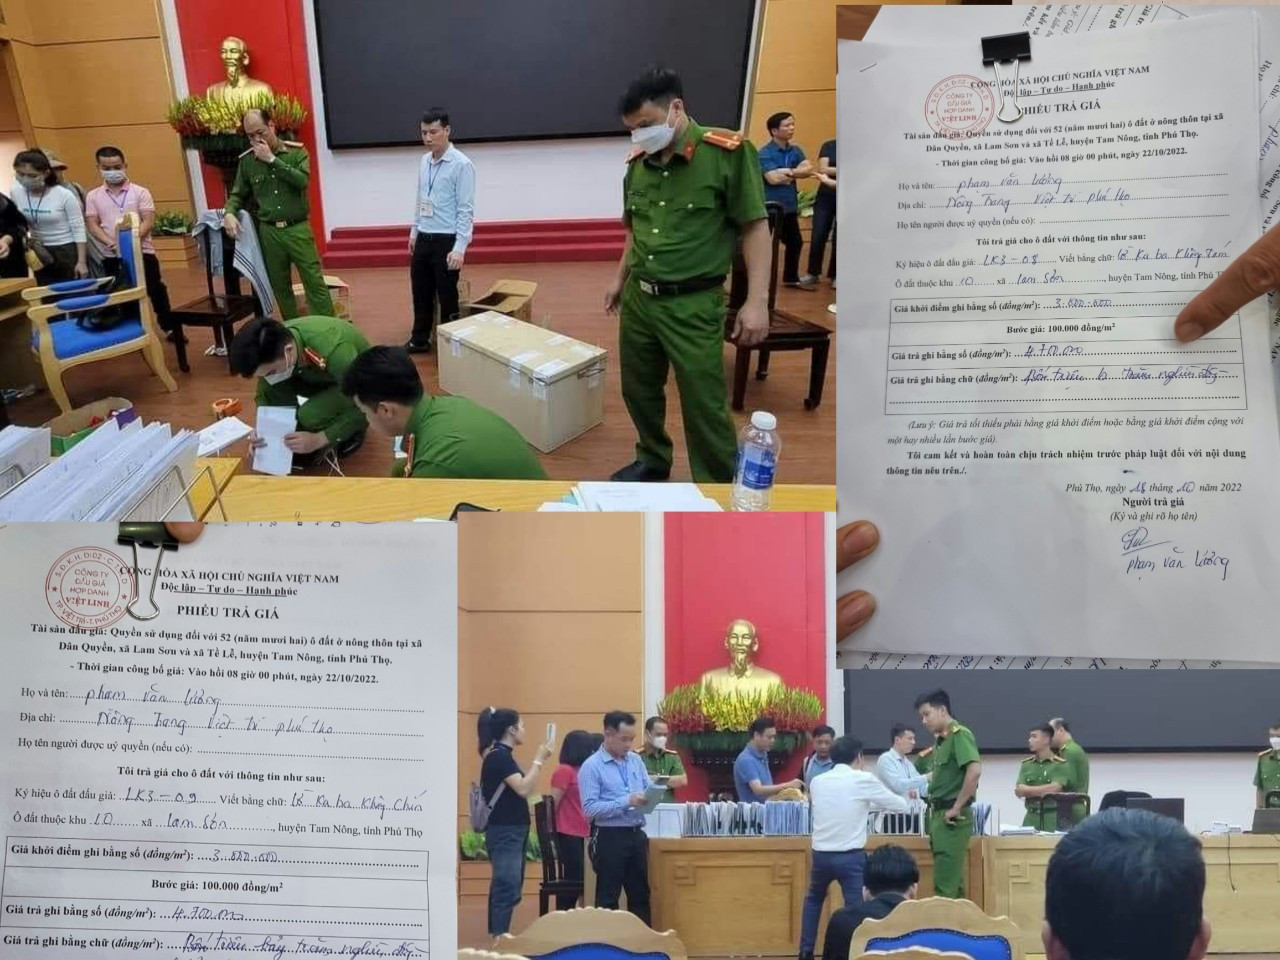 Trước những dấu hiệu bất thường trong đấu giá, UBND huyện Tam Nông đã ra thông báo chấm dứt hợp đồng với Công ty đấu giá hợp danh Việt Linh, đồng thời trả lại tiền mua hồ sơ và đặt trước của khách hàng